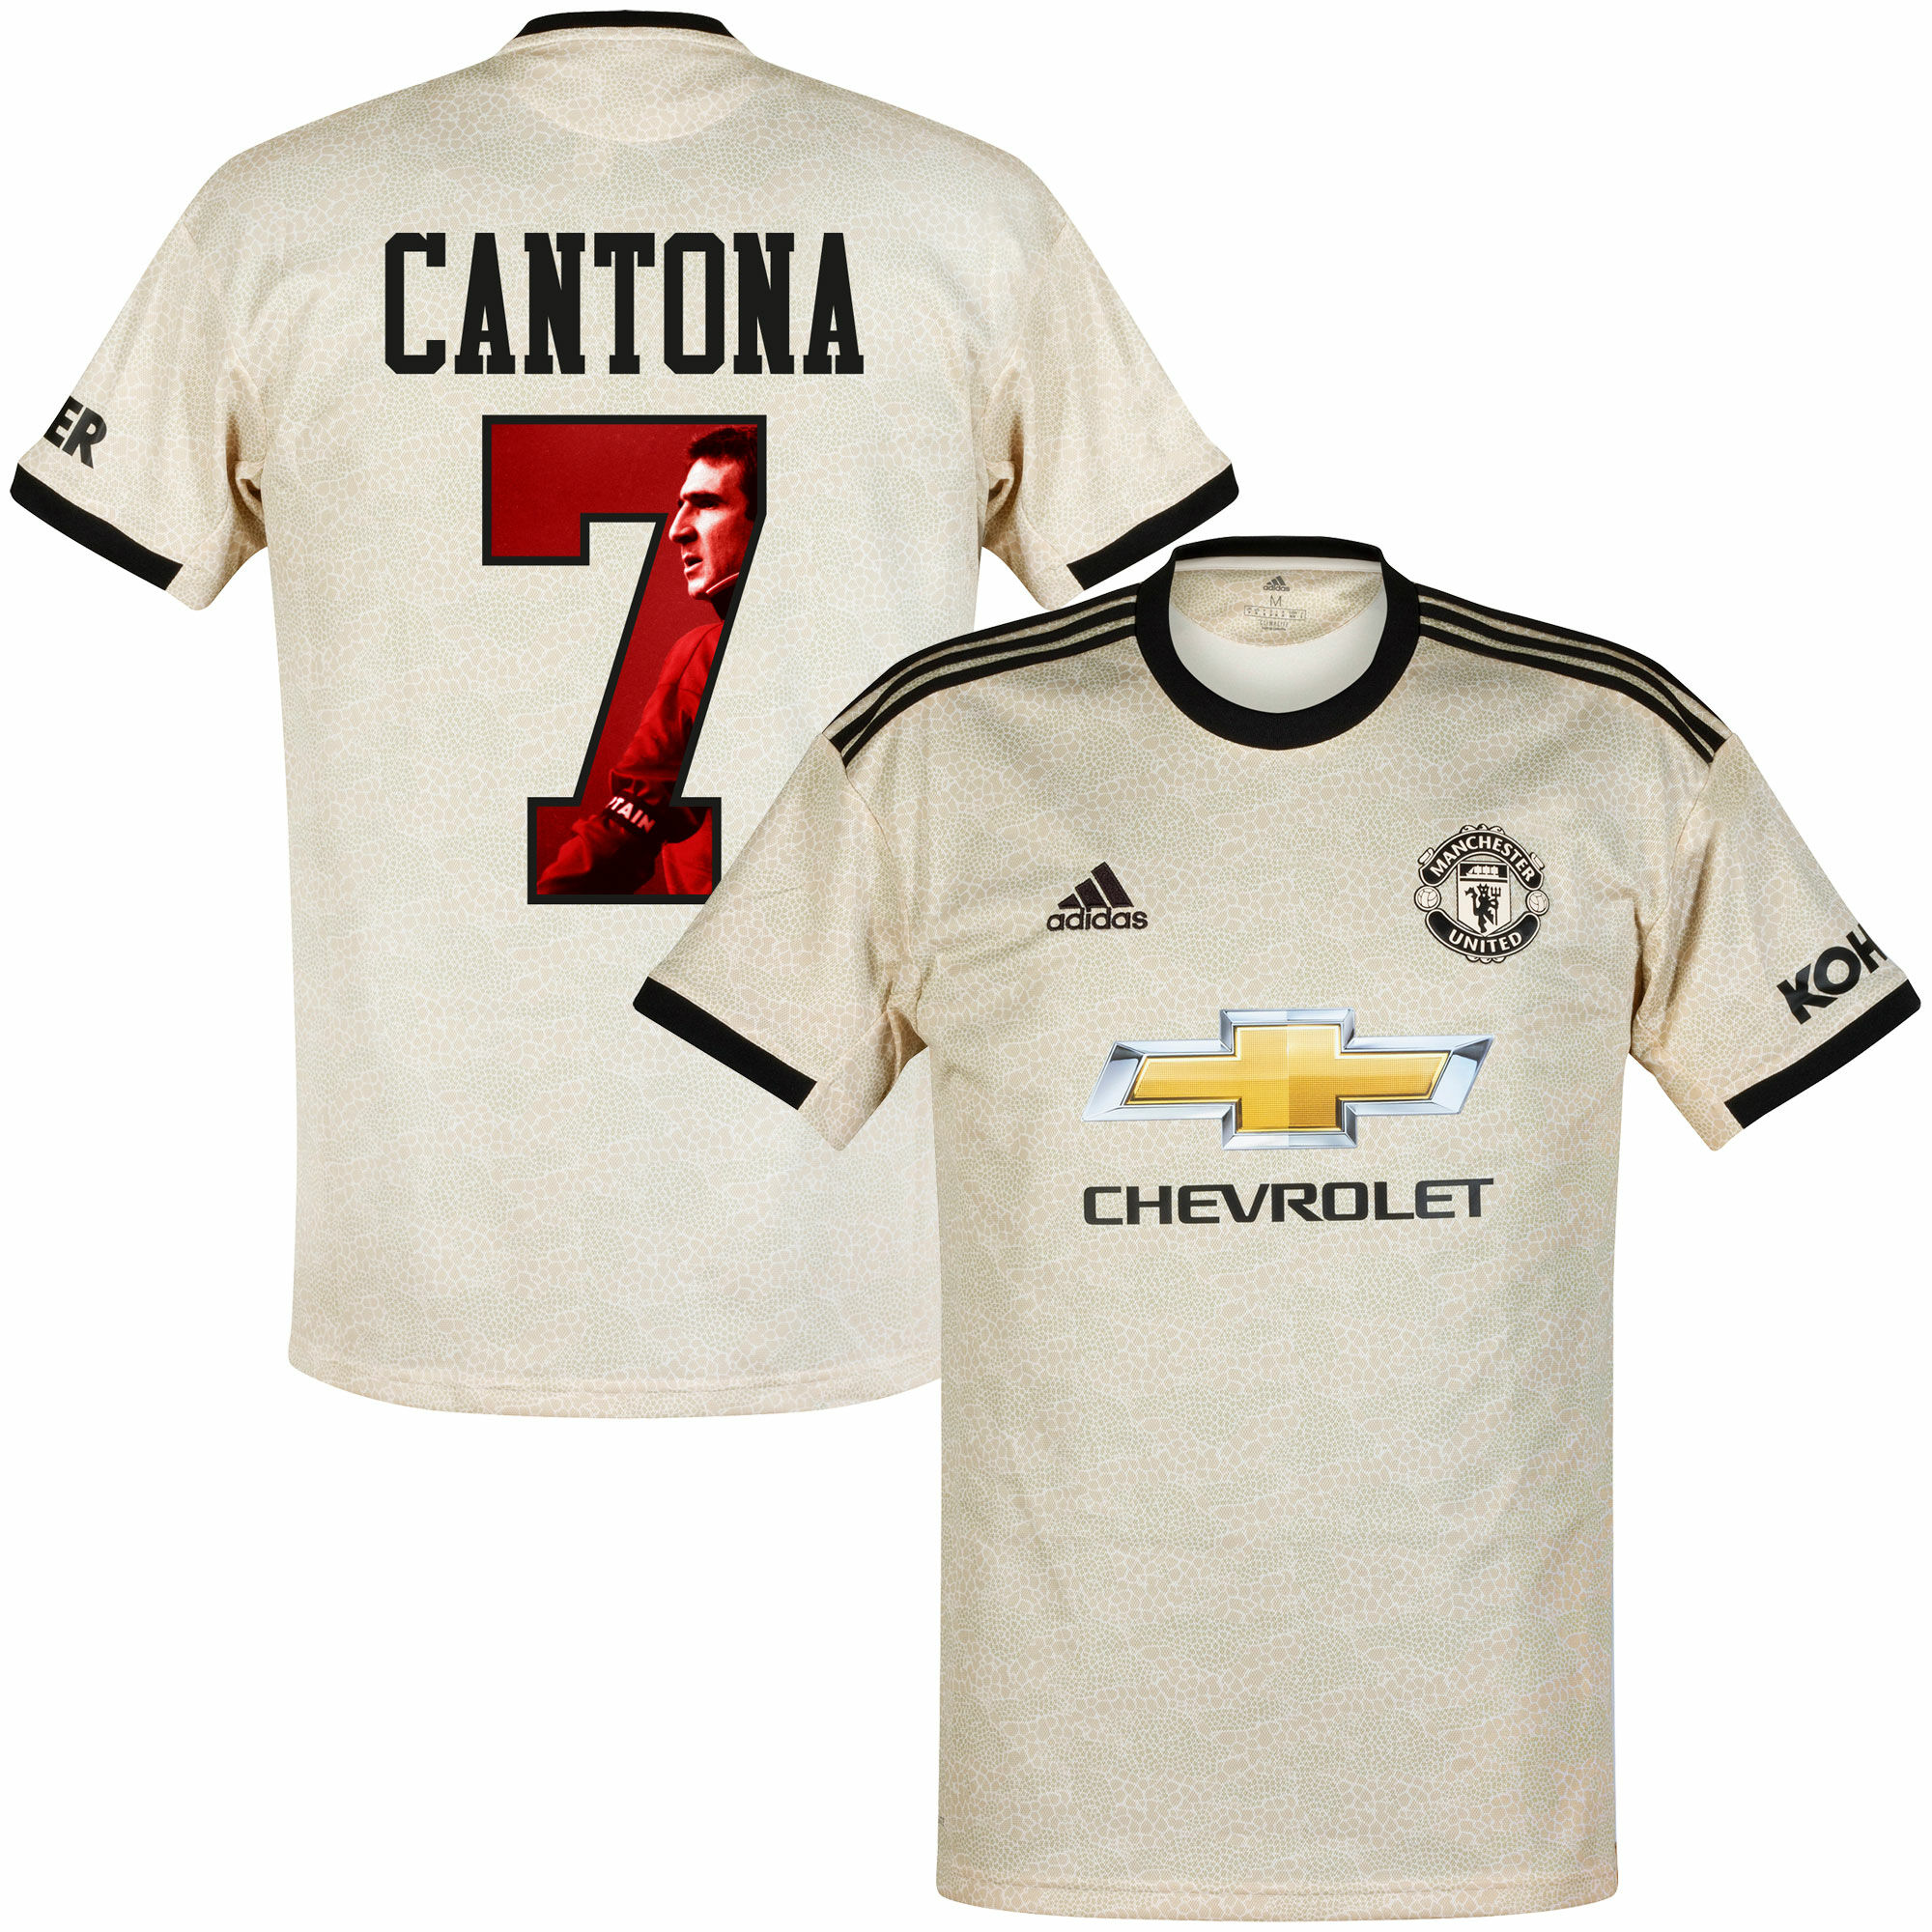 Manchester United - Dres fotbalový - bílý, sezóna 2019/20, číslo 7, Eric Cantona, potisk s obrázkem, venkovní